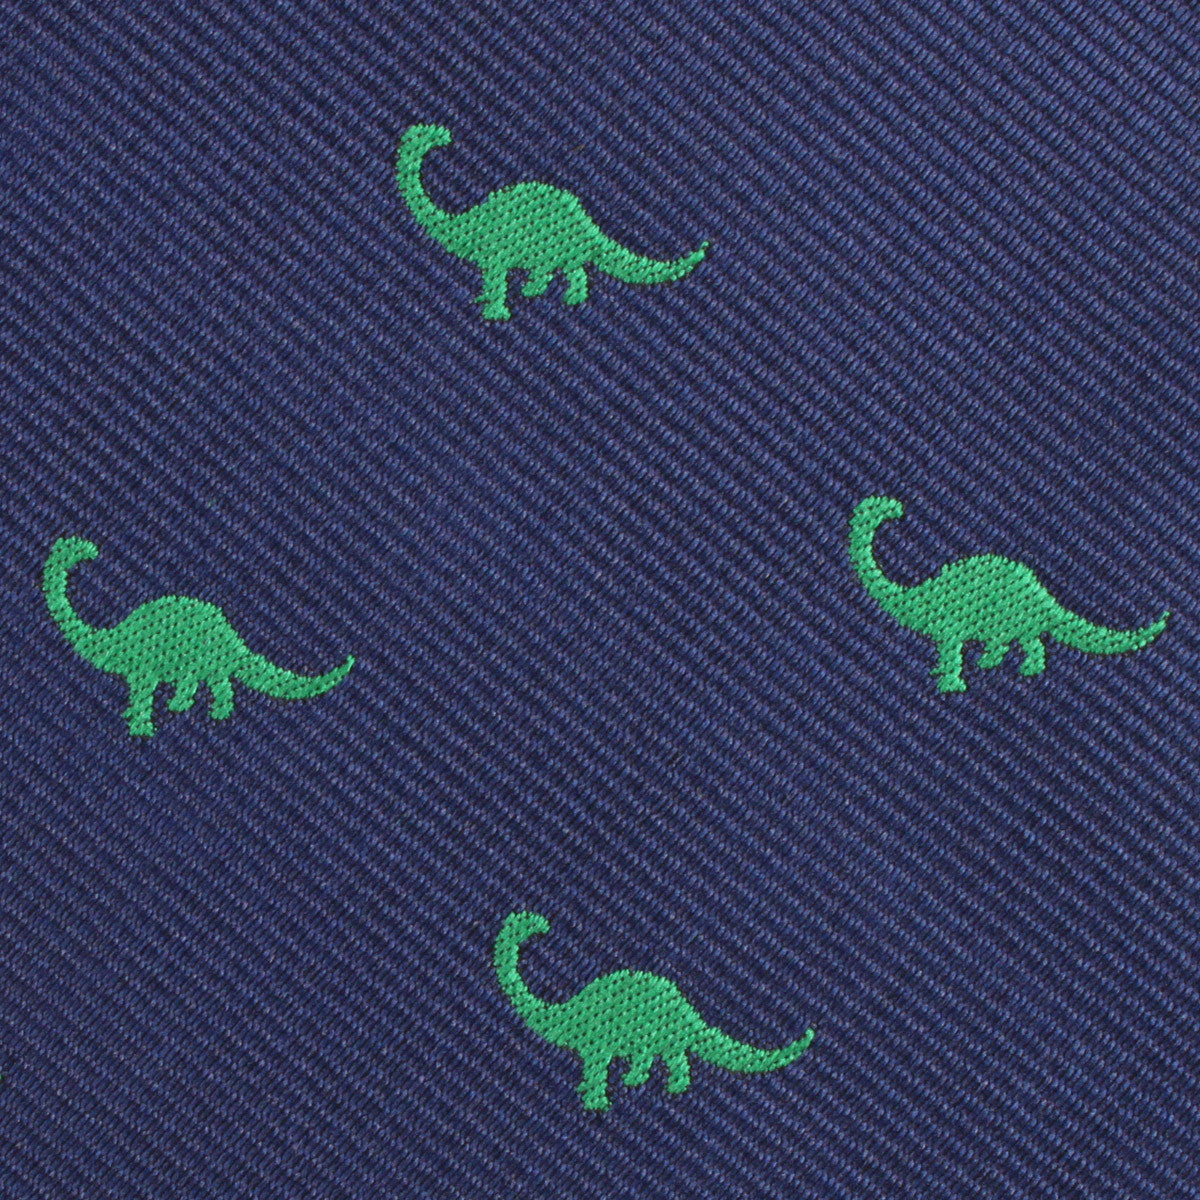 Brontosaurus Dinosaur Fabric Skinny Tie